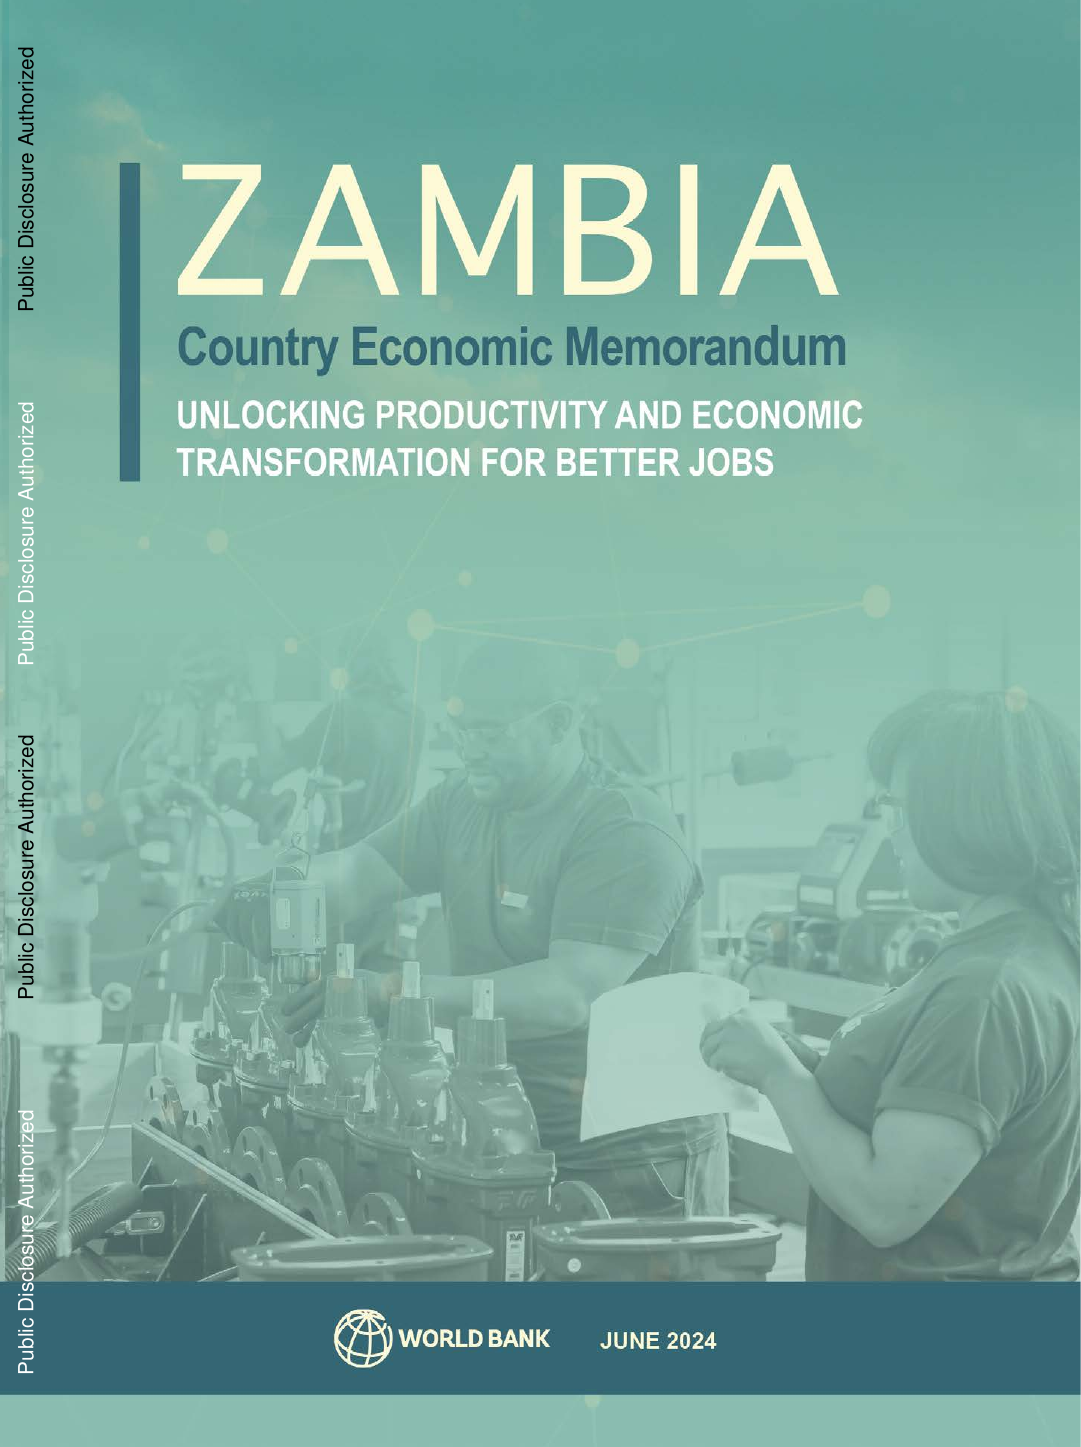 世界银行-赞比亚国家经济备忘录，2024年6月：释放生产力和经济转型，创造更好的就业机会（英）.pdf